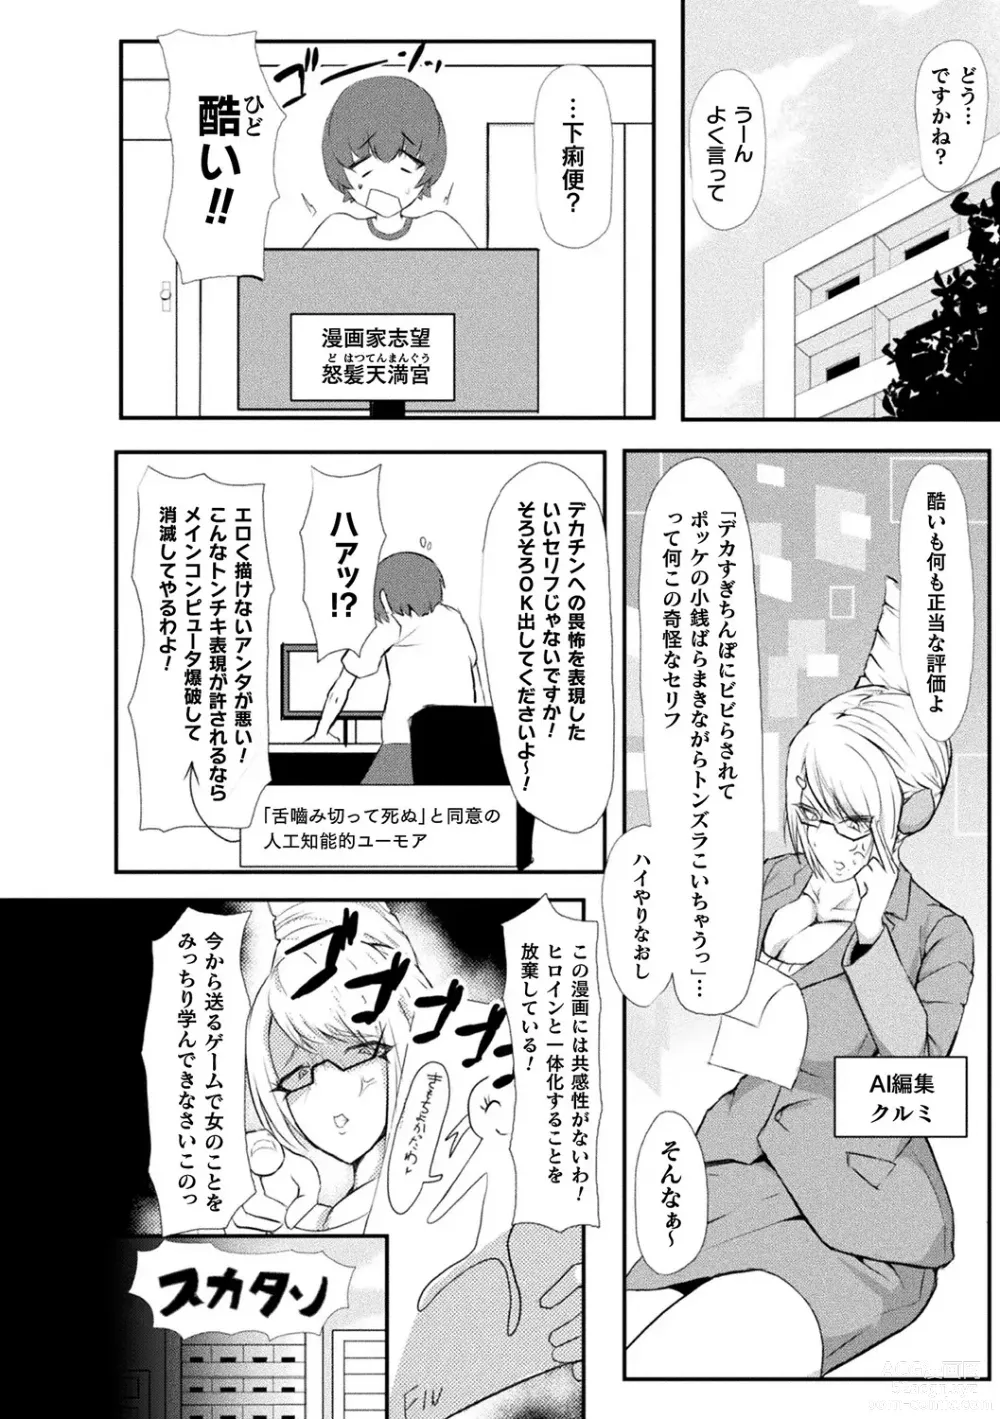 Page 88 of manga Bessatsu Comic Unreal AI ni Wakaraserareru Jinrui Hen Vol. 2